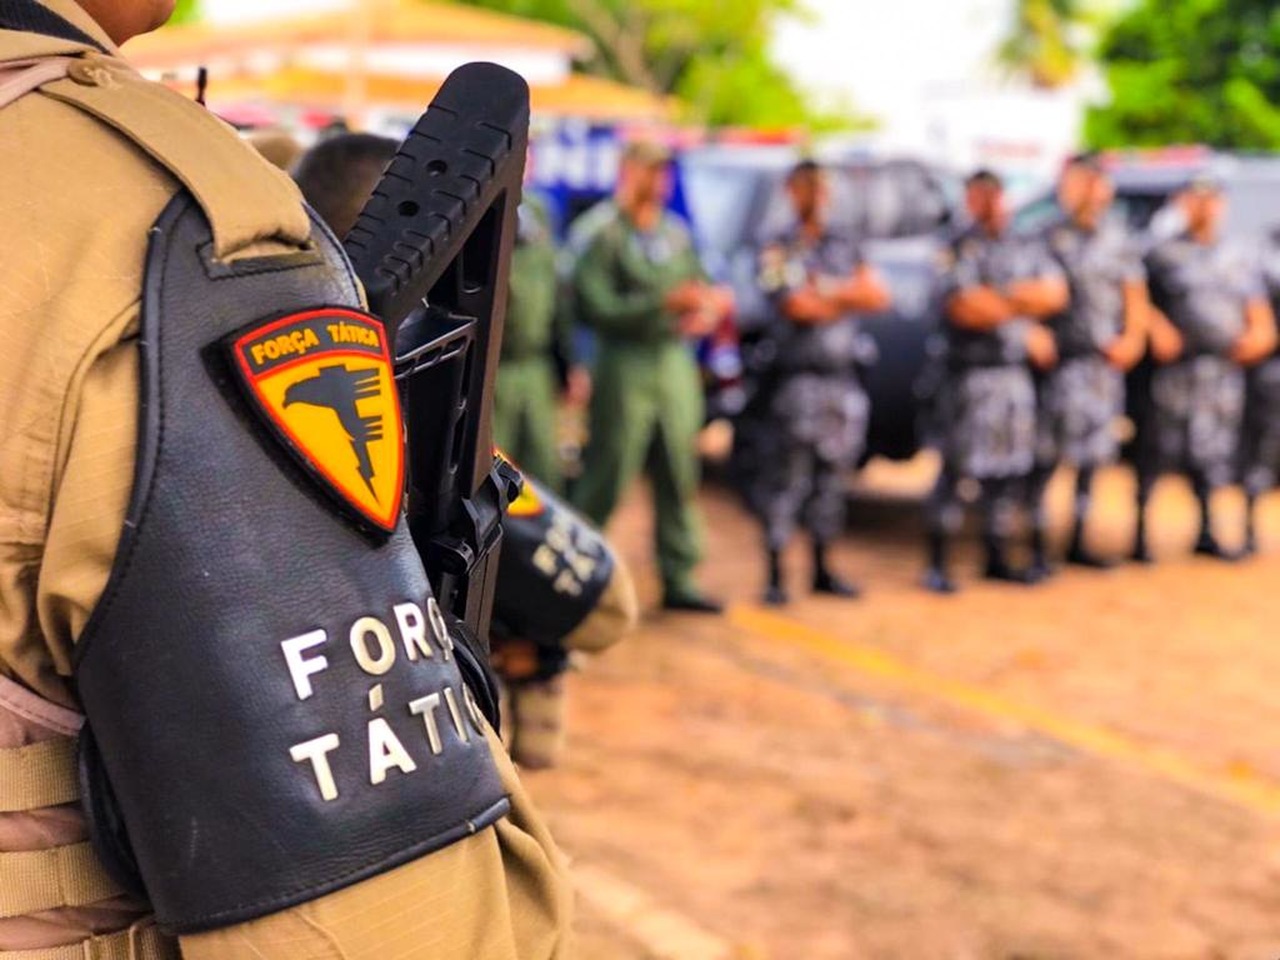 PM adia início do XIII Curso de Força Tática para evitar propagação da Covid-19 em Araguaína